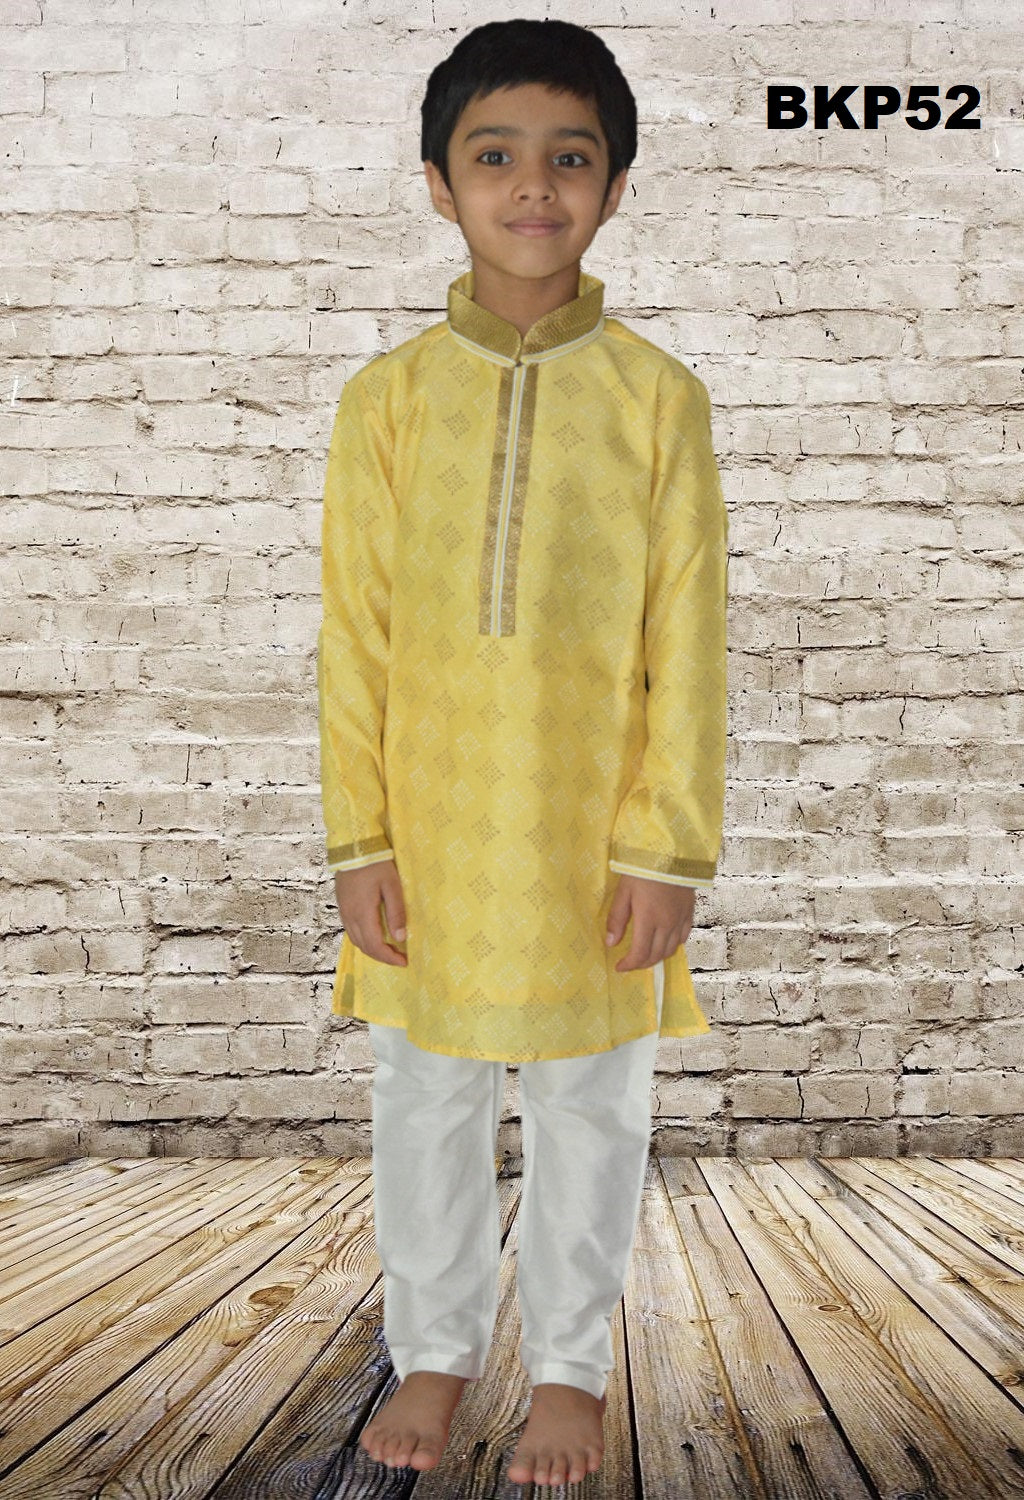 BKP52 - Boys Printed Lemon Yellow Cotton silk Kurta Pajama set